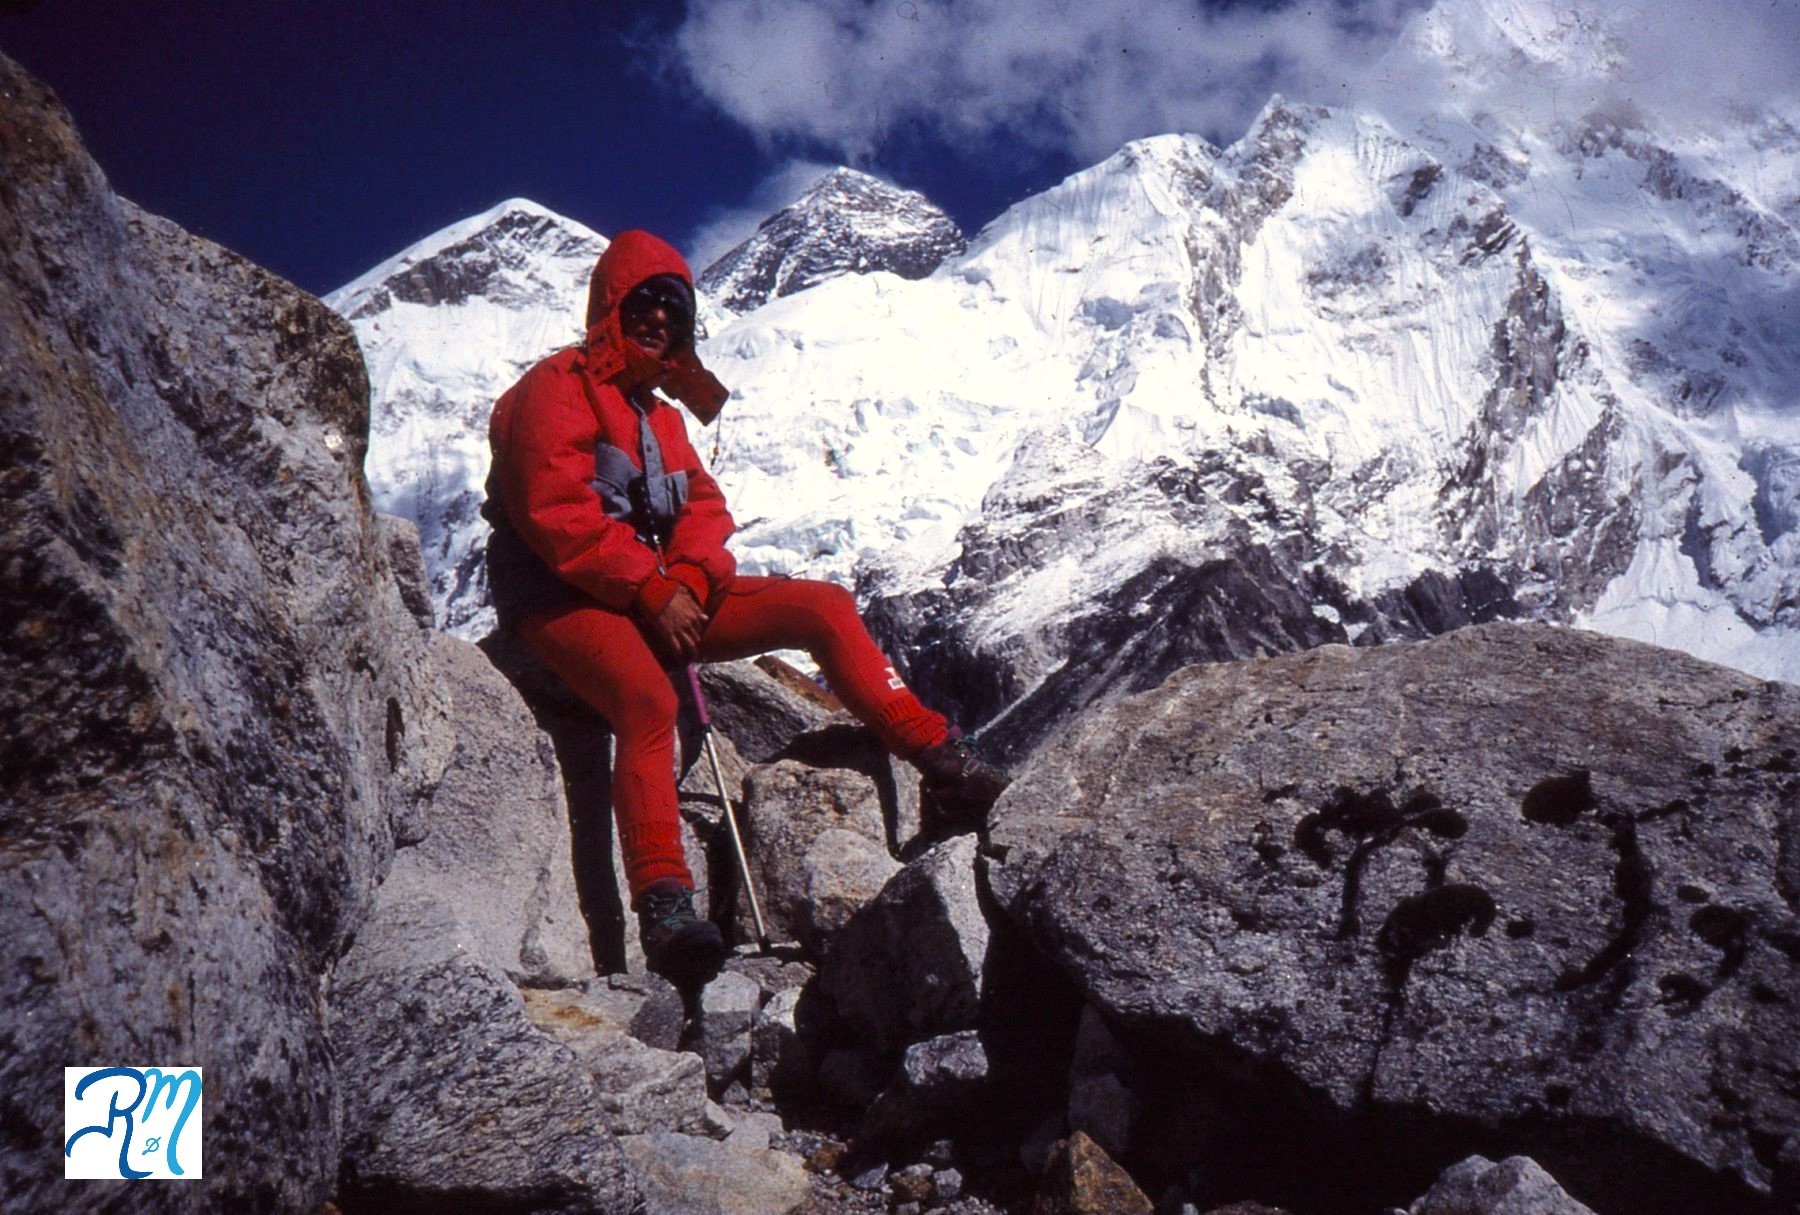 Reyes aparece sentada en unas grandes rocas con ropa de alta montaña roja, cubierta cabeza con capucha y gafas de nieve. Tras ella tres de las grandes montañas del Himalaya: Everest, Nuptse y Lhotse.